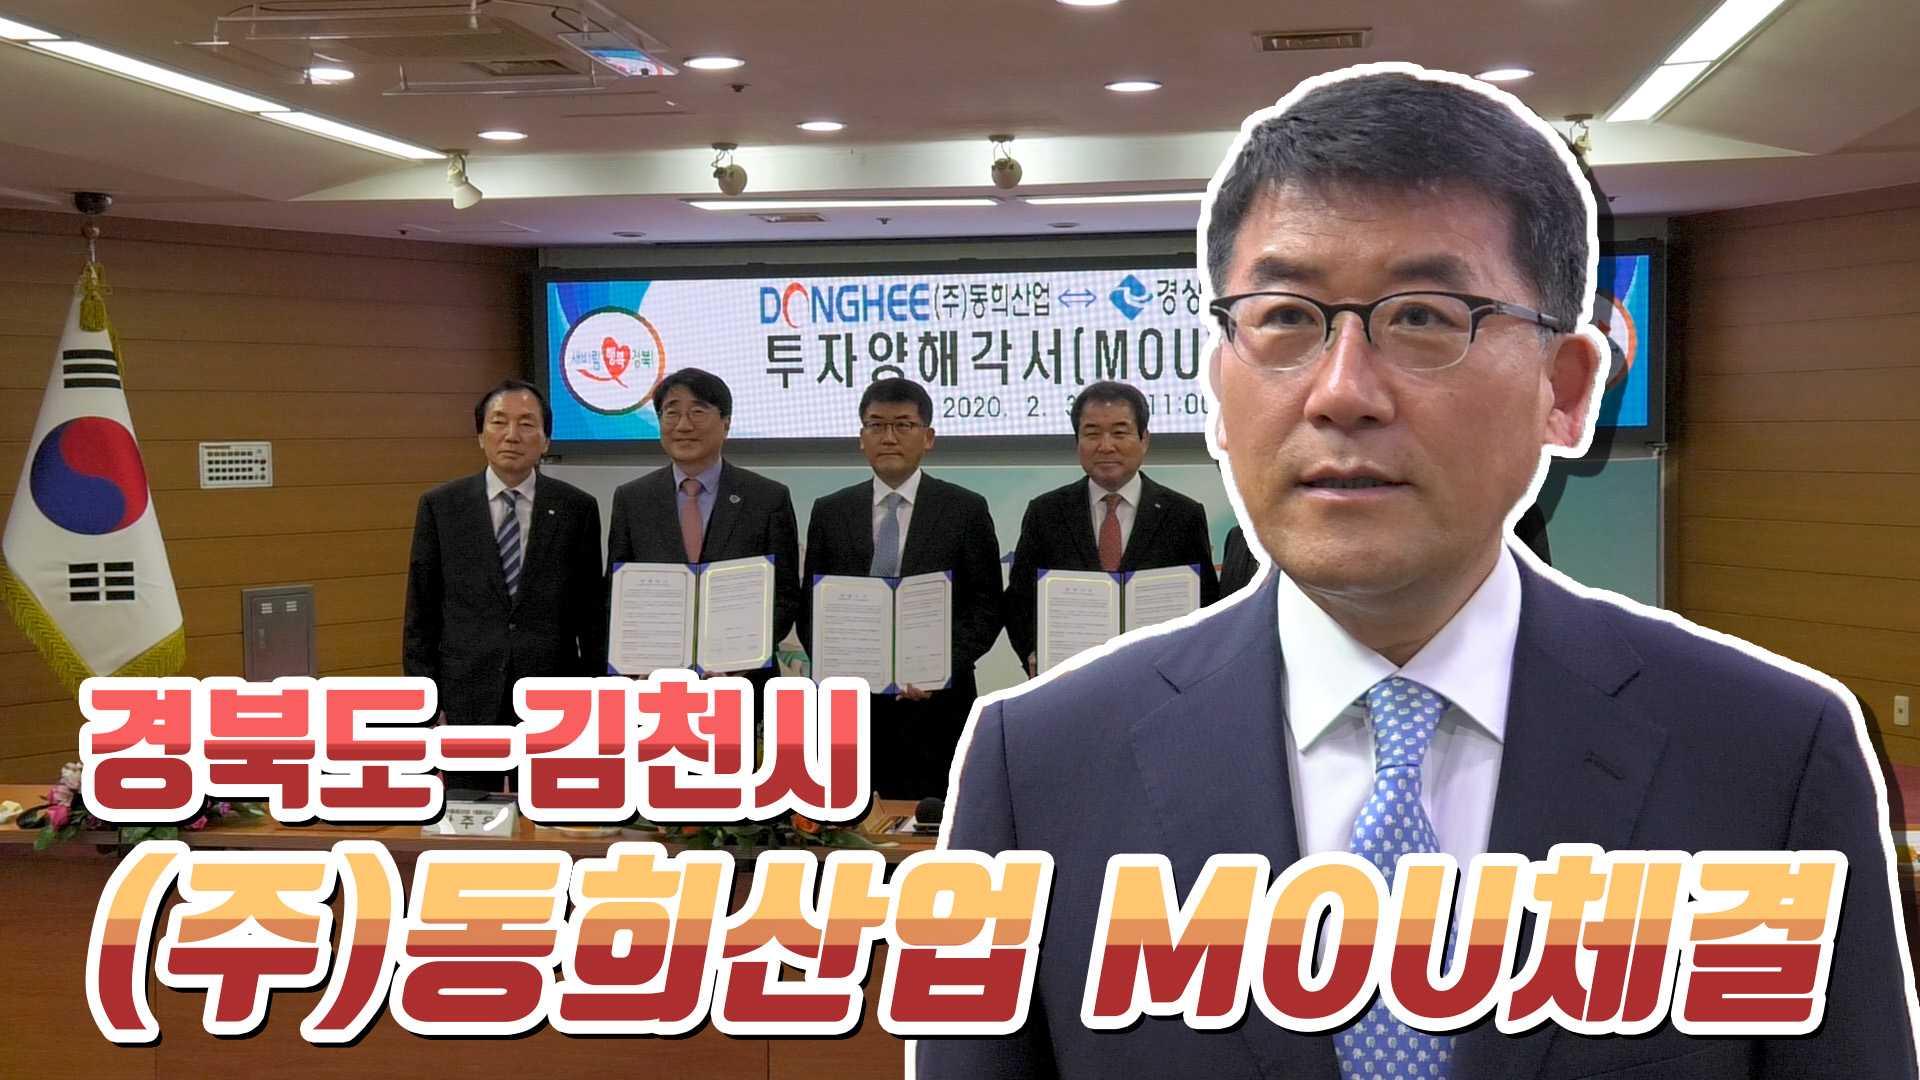 경북도-김천시 - (주)동희산업 MOU체결